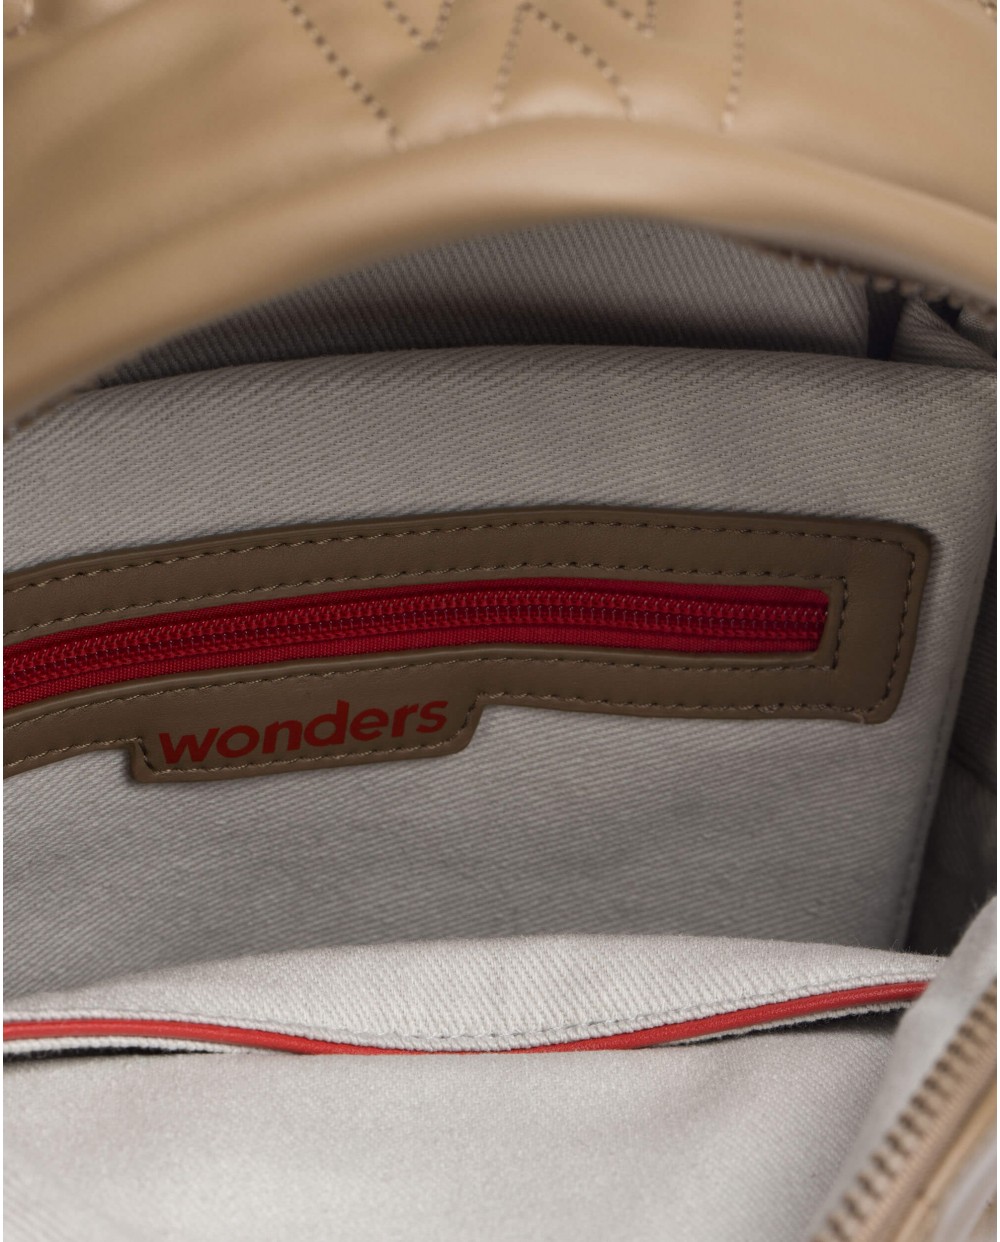 Wonders-Pre-Spring-Mink school backpack